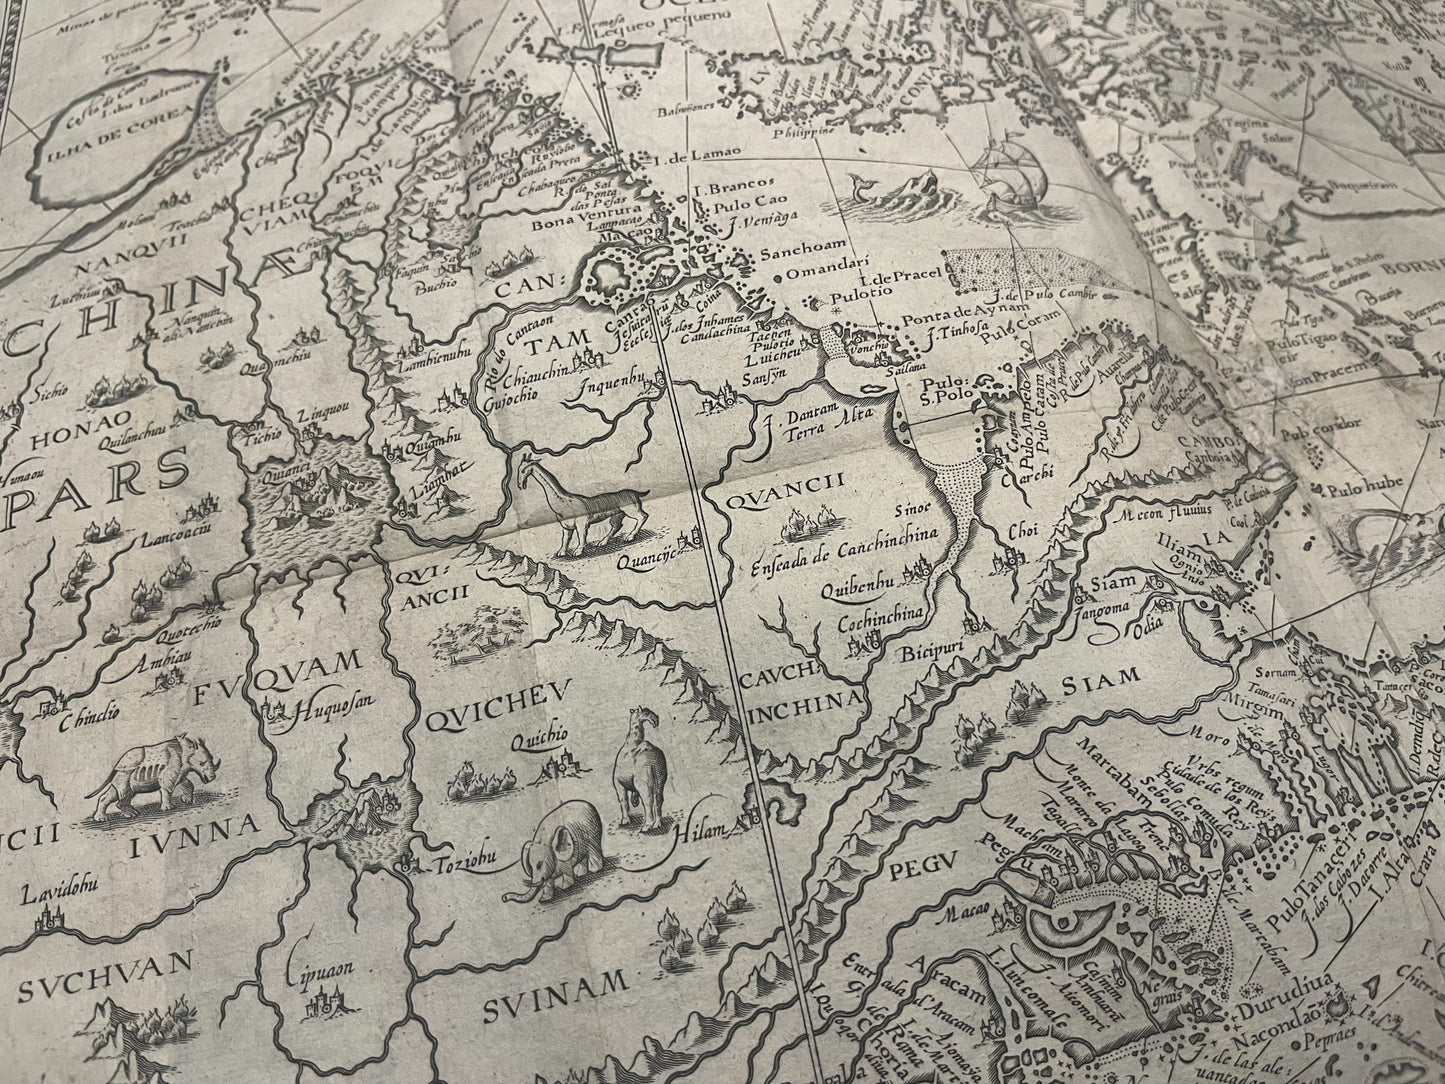 Linschoten - 1596 - "Exacta & Accurata Delineatio cum Orarum Maritimarum tum etjam locorum terrestrium quae in Regionibus China, Cauchinchina, Camboja sive Champa, Syao, Malacca, Arracan & Pegu..."